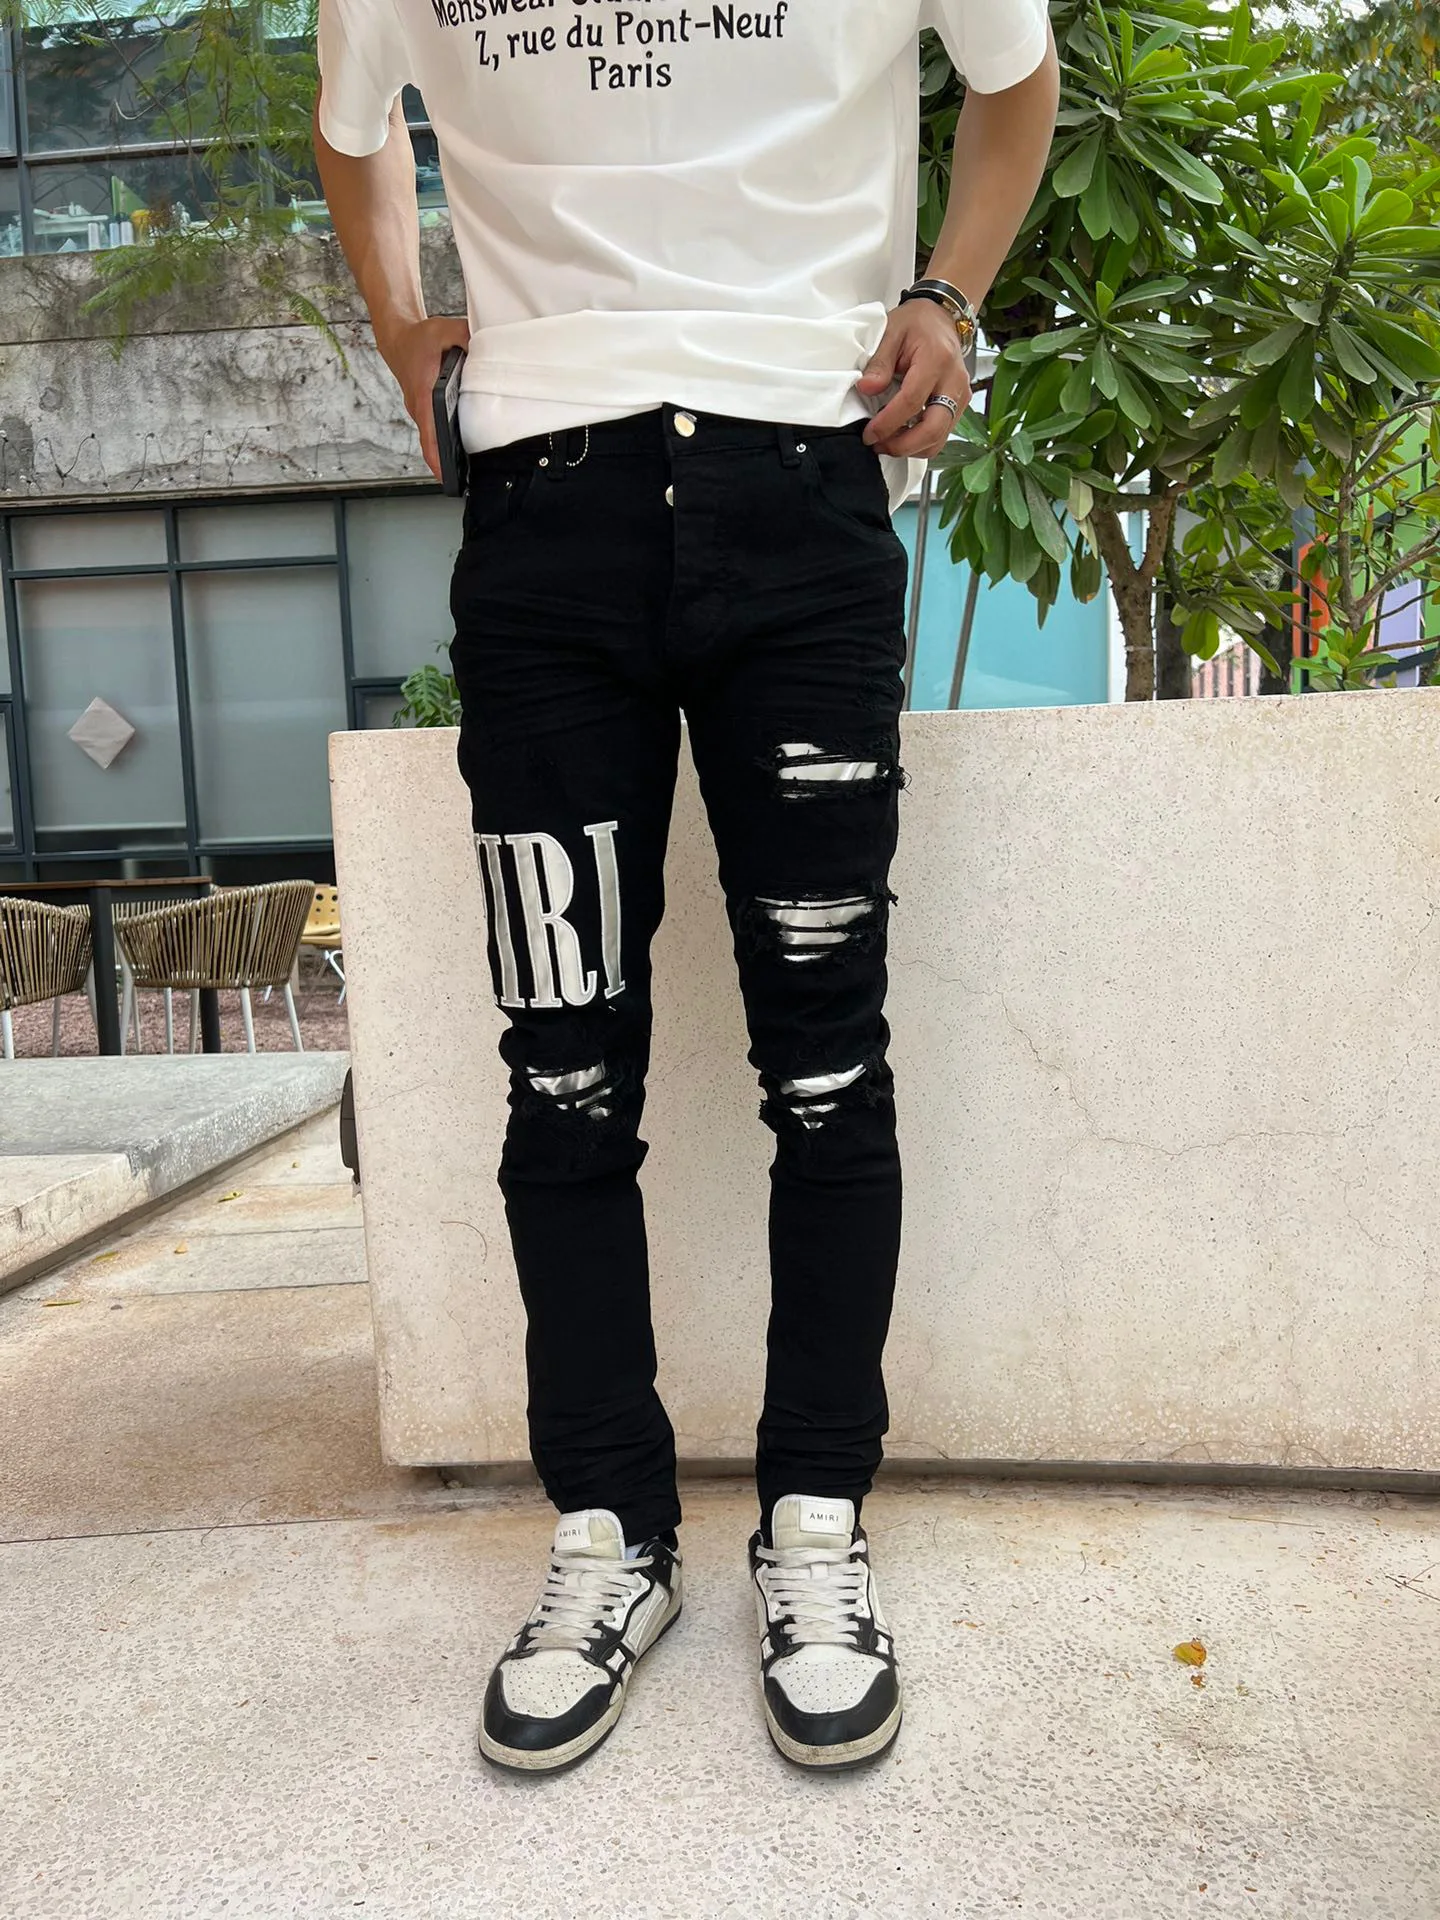 

Мужские облегающие джинсы, распродажа, брендовые рваные джинсовые брюки с потертостями, обтягивающие рваные брюки стрейч с поврежденной росписью